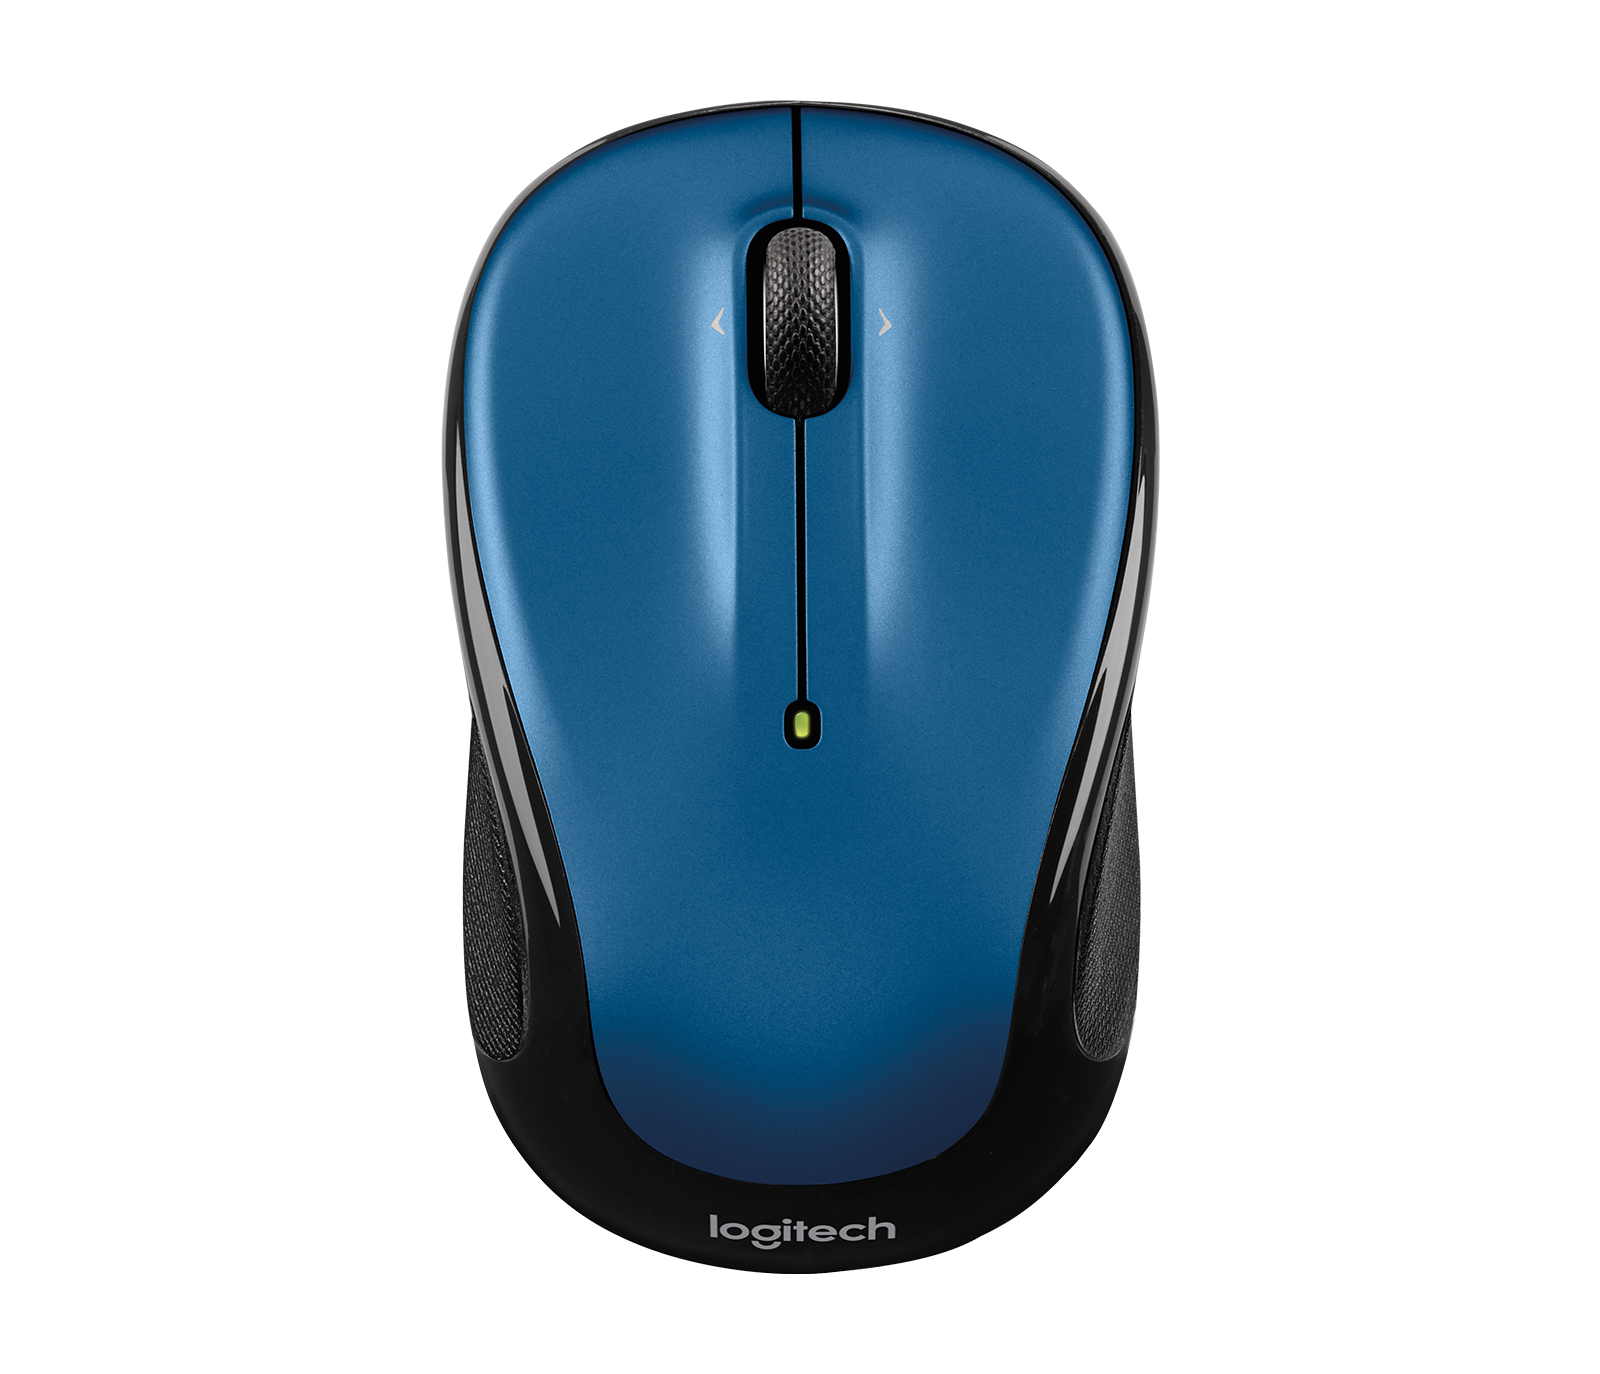 Logitech M325 Wireless Mouse - Multiple Color Choices